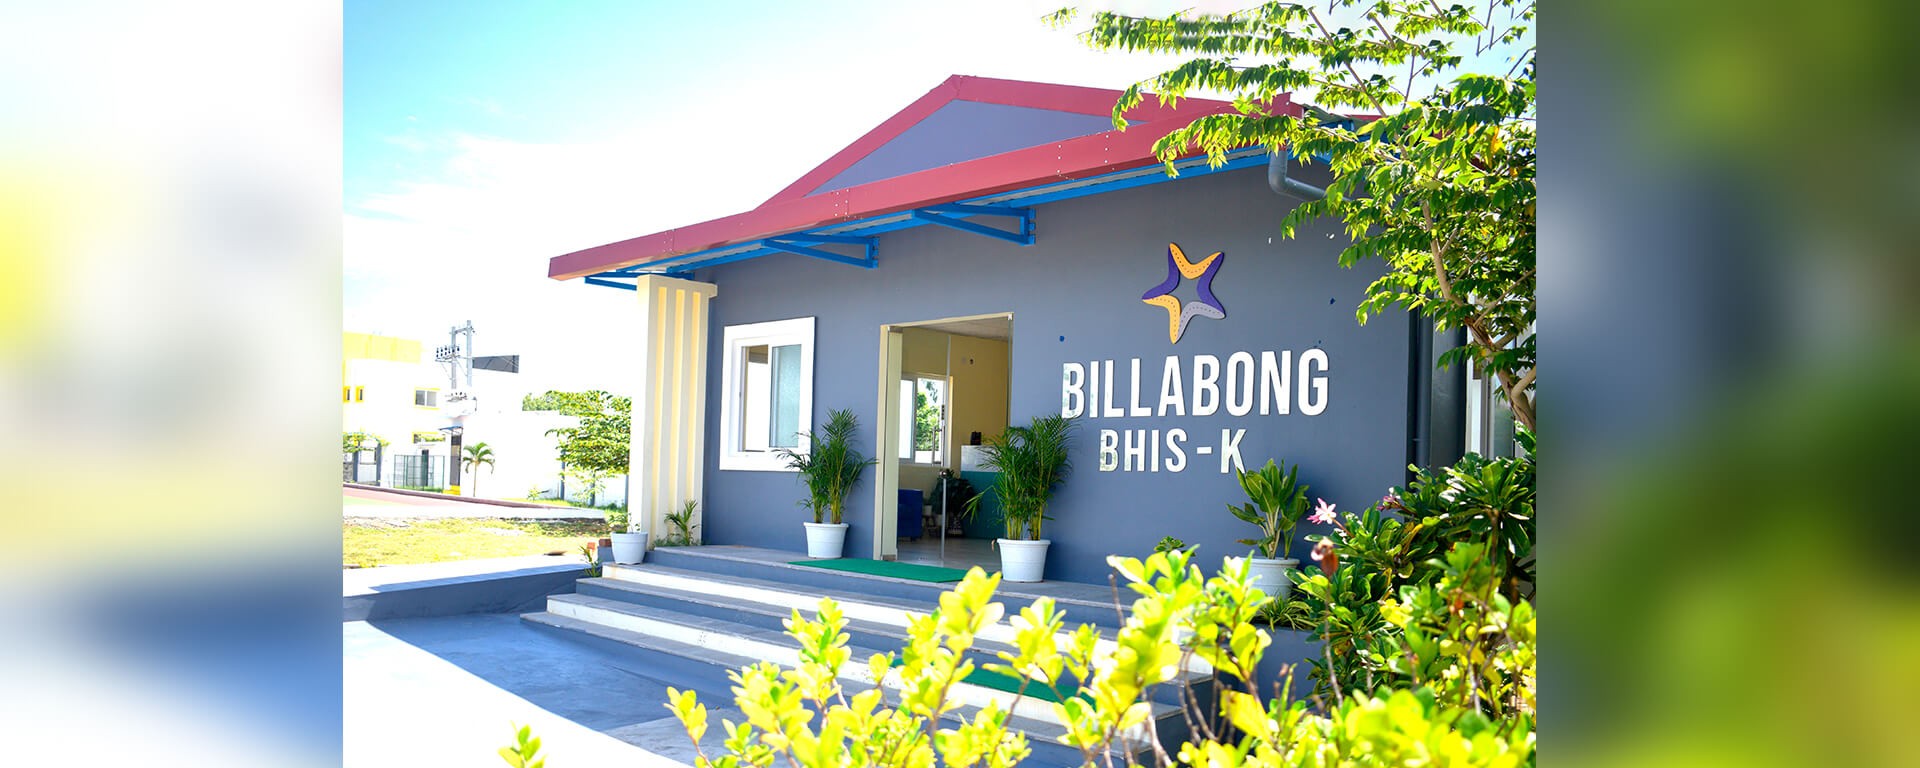 Billabong High International School